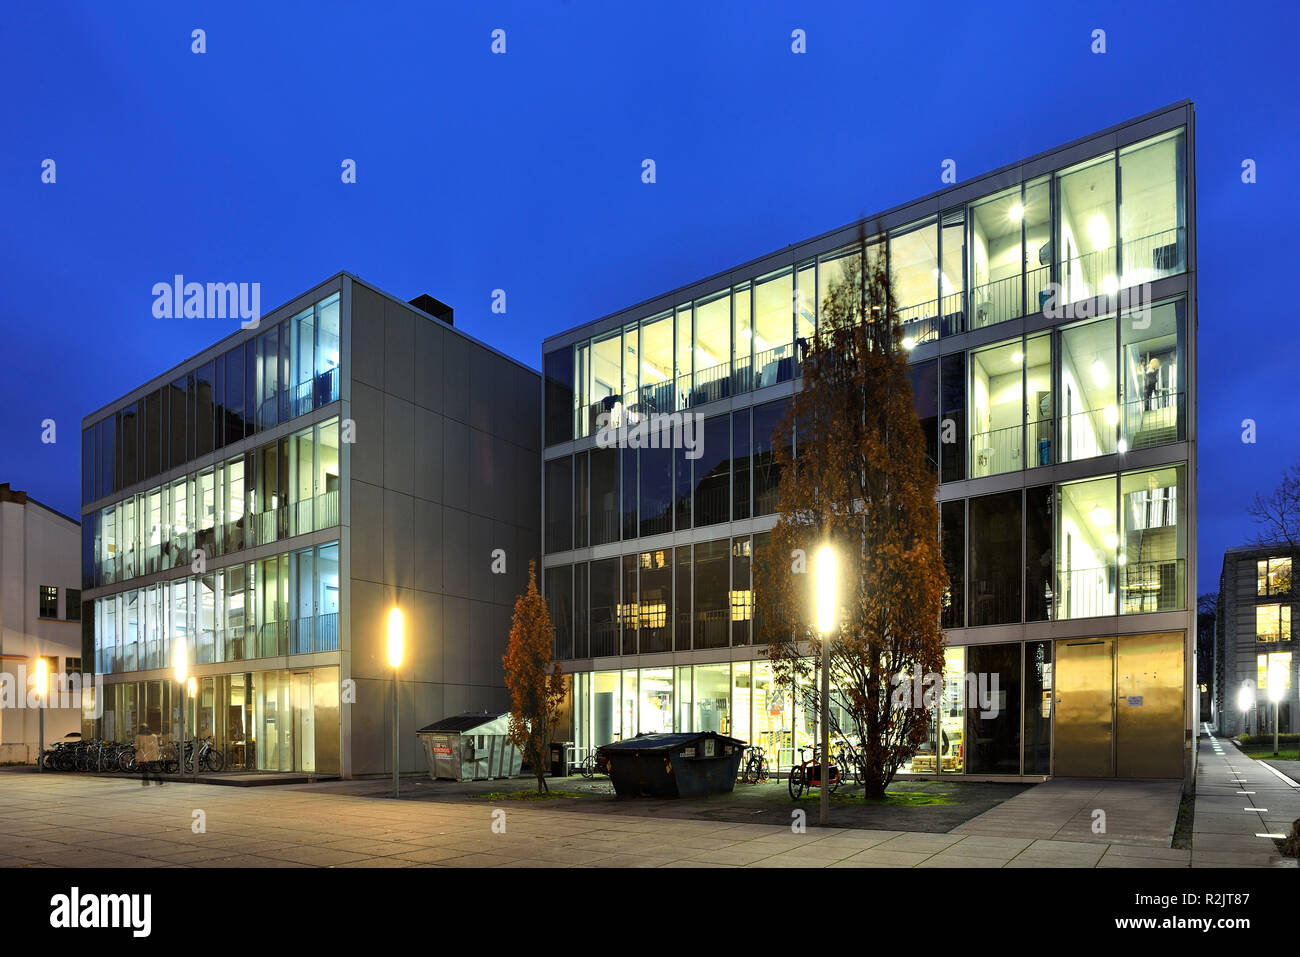 Germany, Thuringia, Weimar, Bauhaus University, night shot, illuminated glass cubes Stock Photo